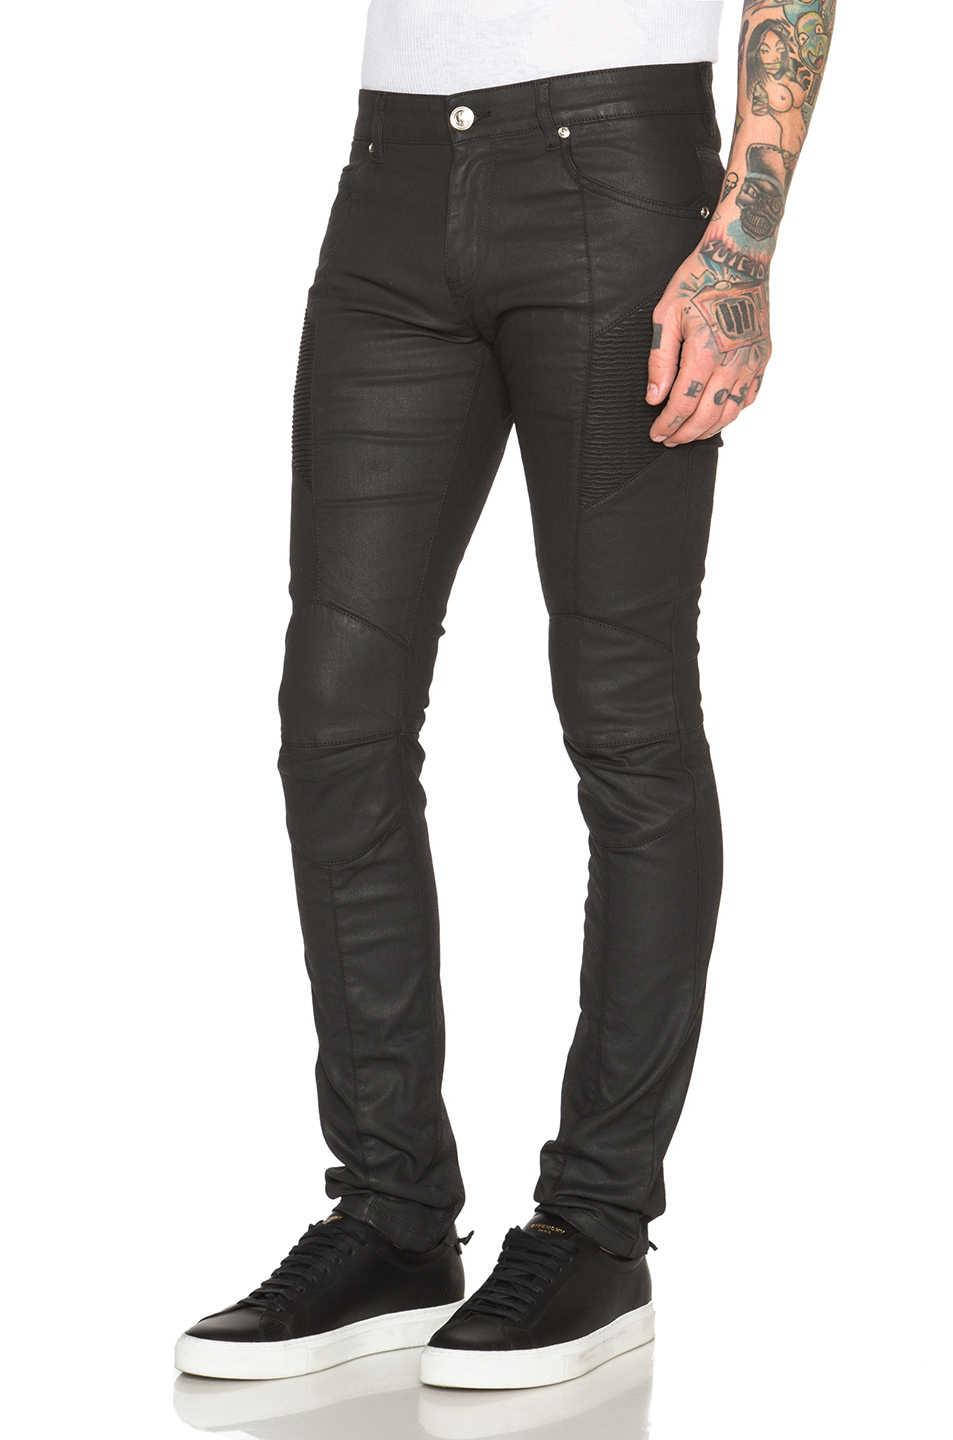 Lyst - Balmain Jeans in Black